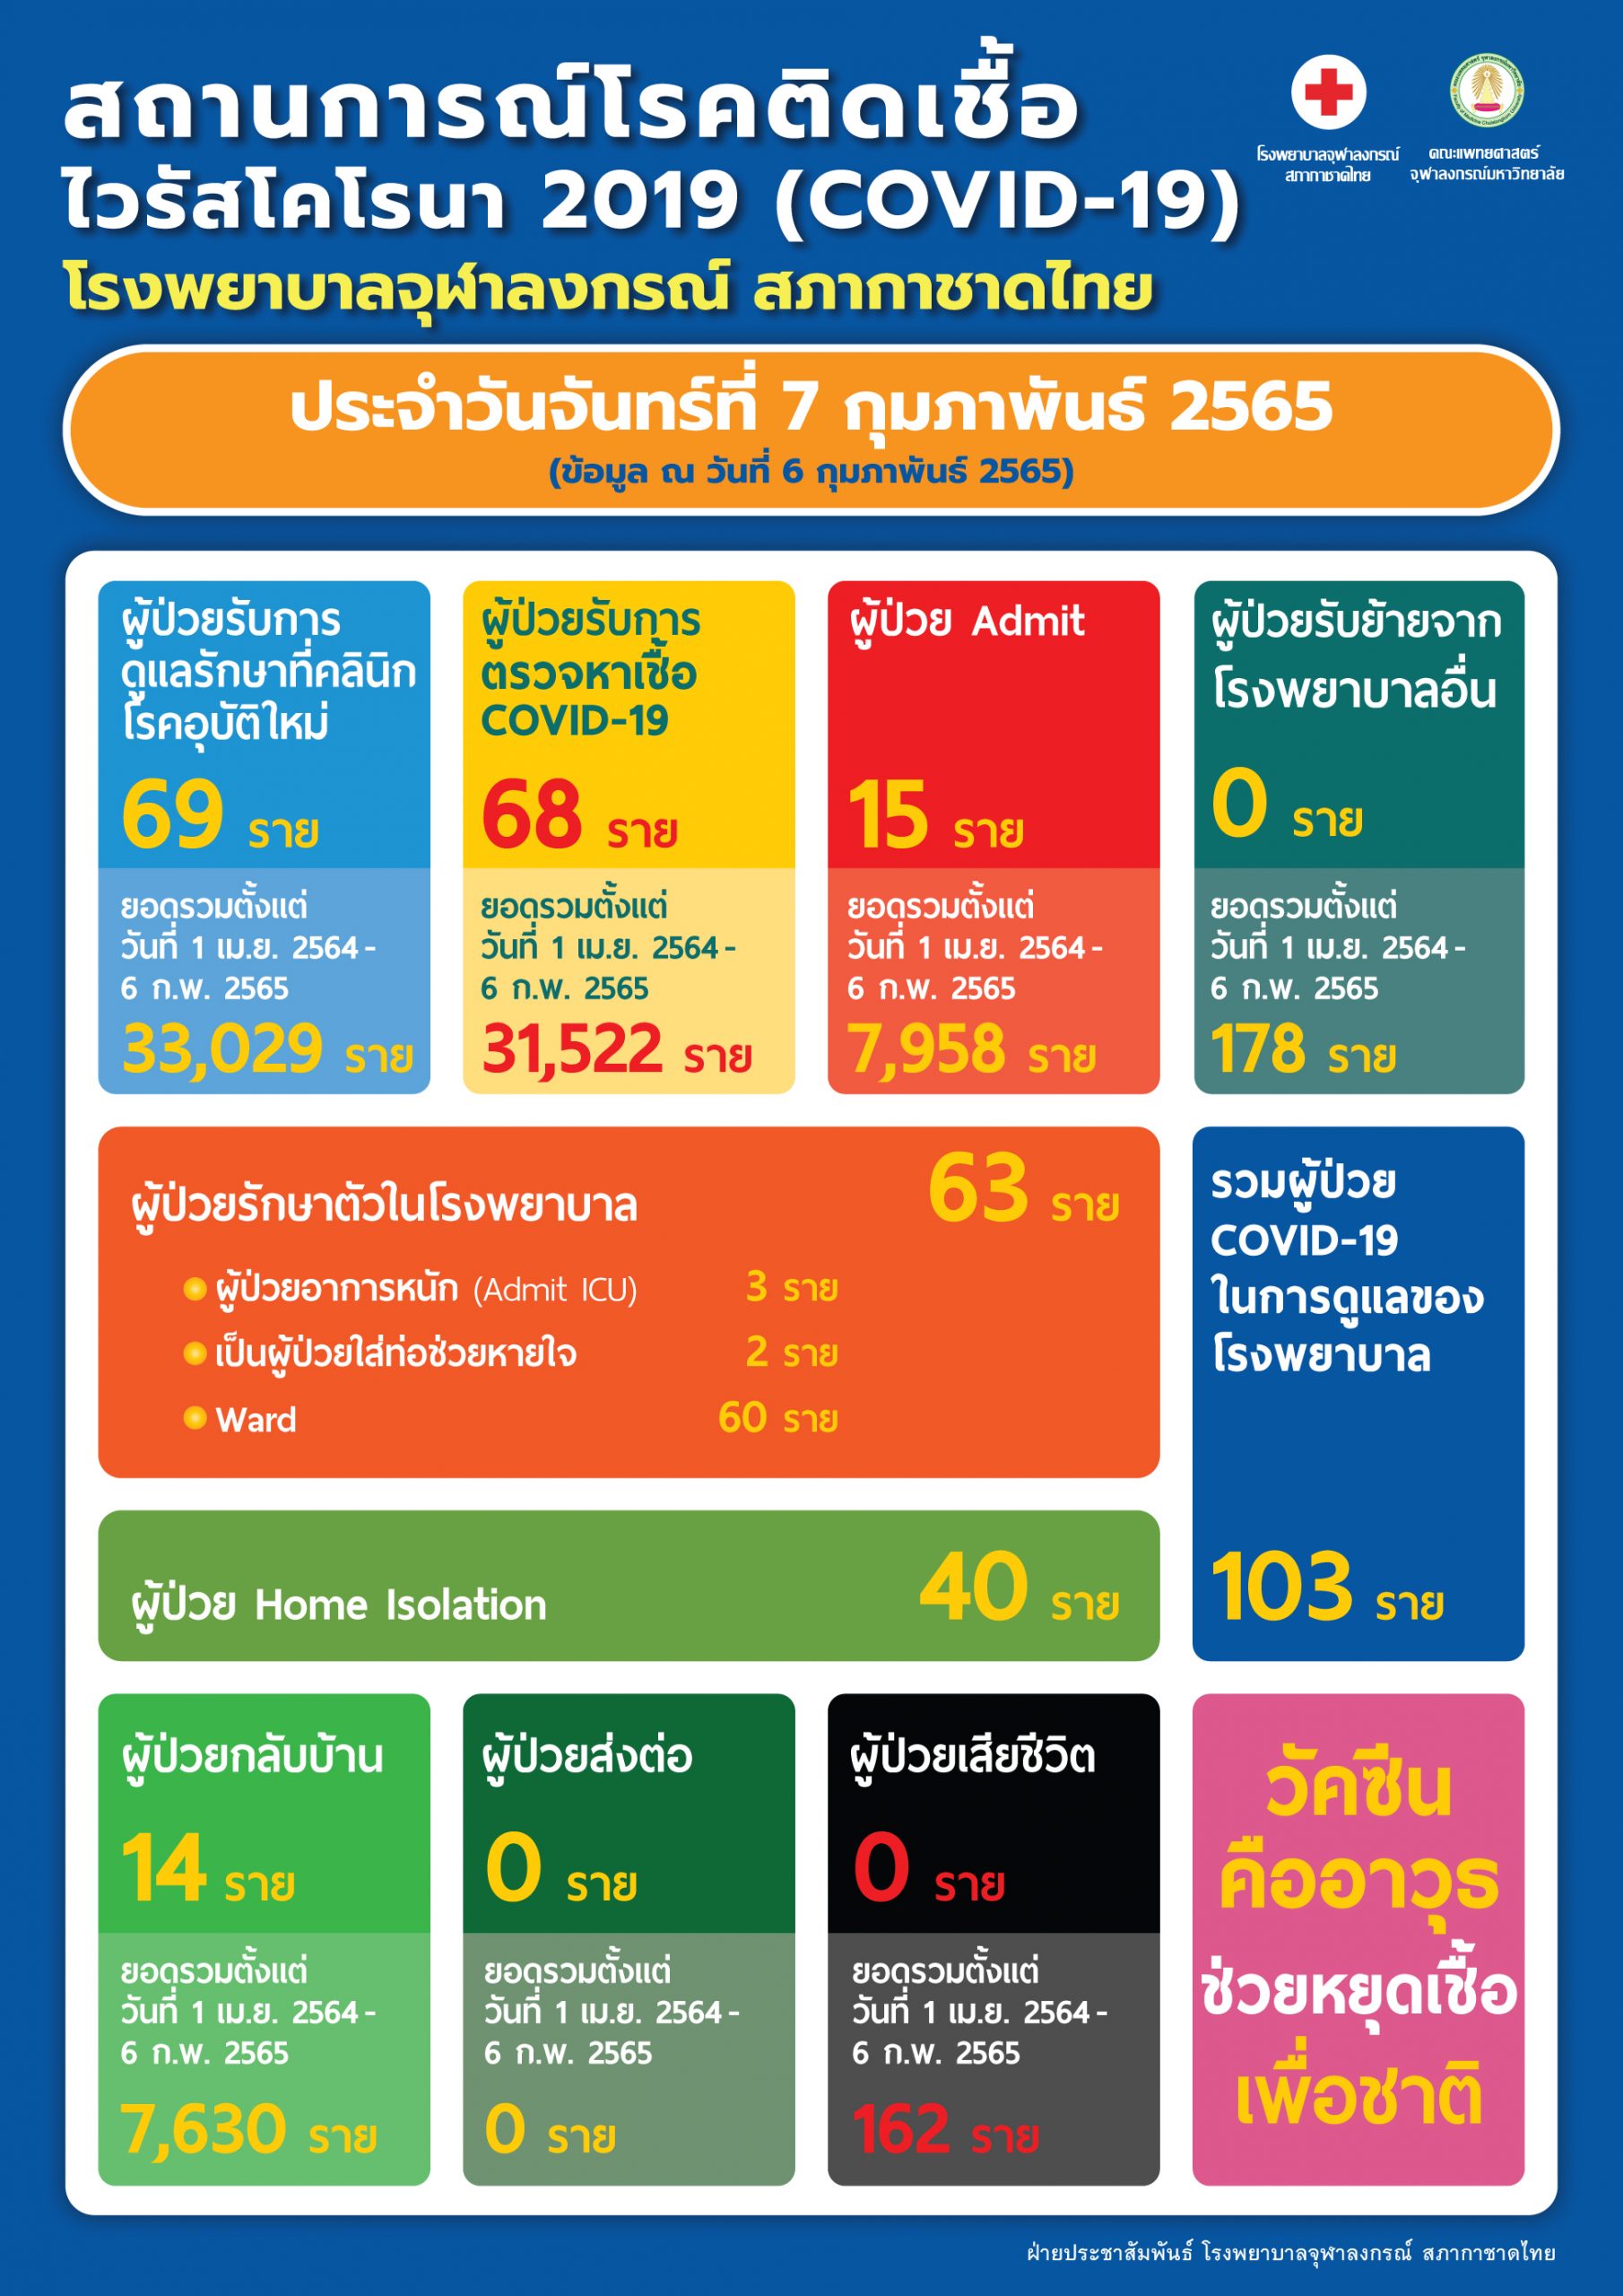 สถานการณ์โรคติดเชื้อไวรัสโคโรนา 2019 (COVID-19) โรงพยาบาลจุฬาลงกรณ์ สภากาชาดไทย ประจำวันจันทร์ที่ 7 กุมภาพันธ์ 2565